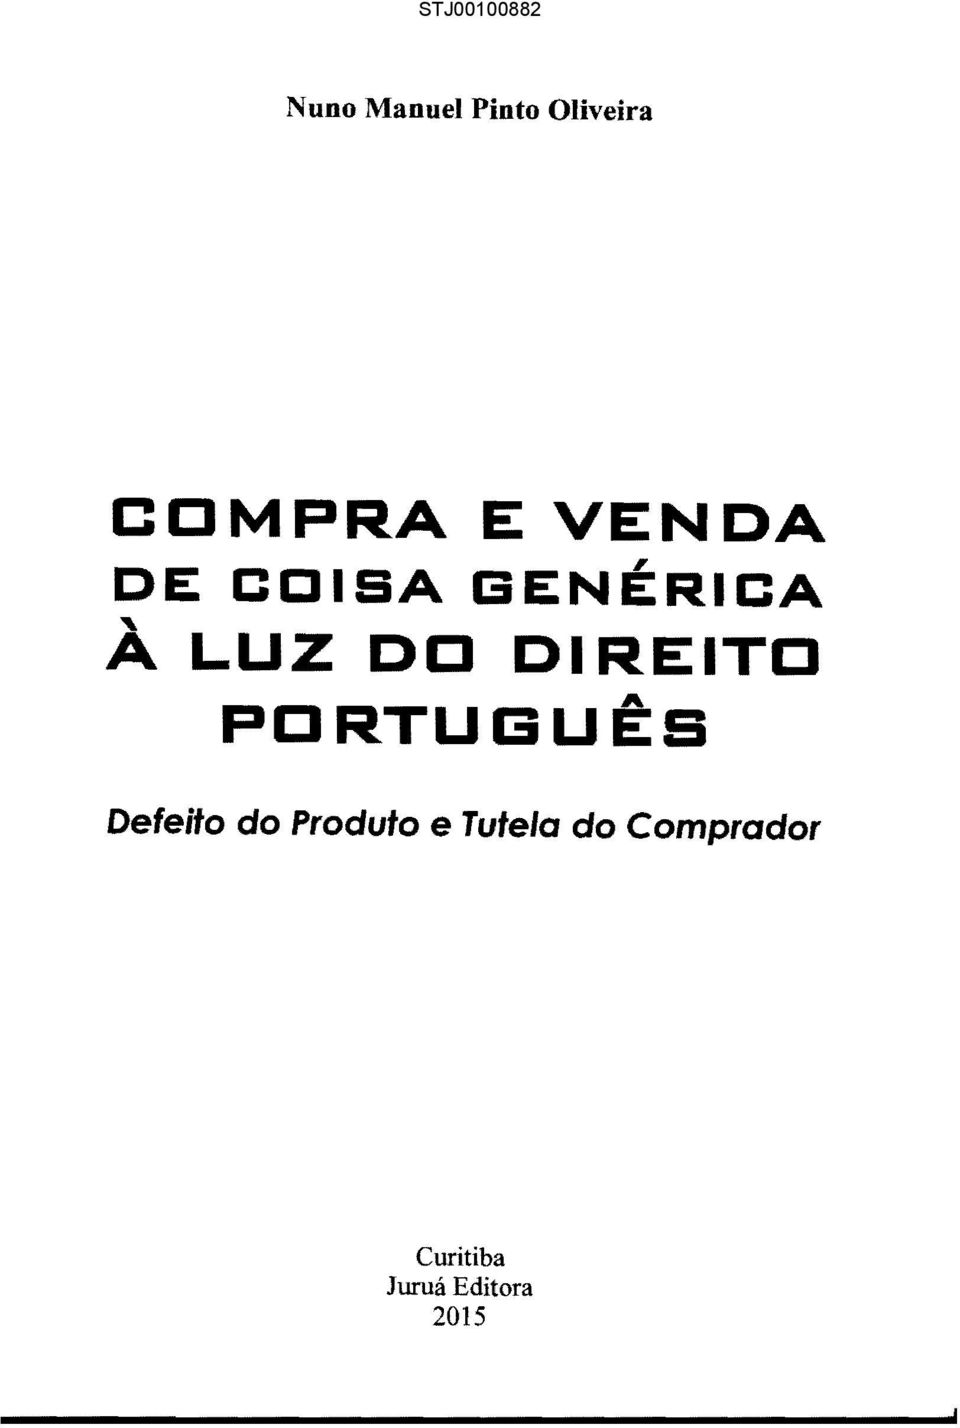 DIREITO A PORTUGUES Defeito do Produto